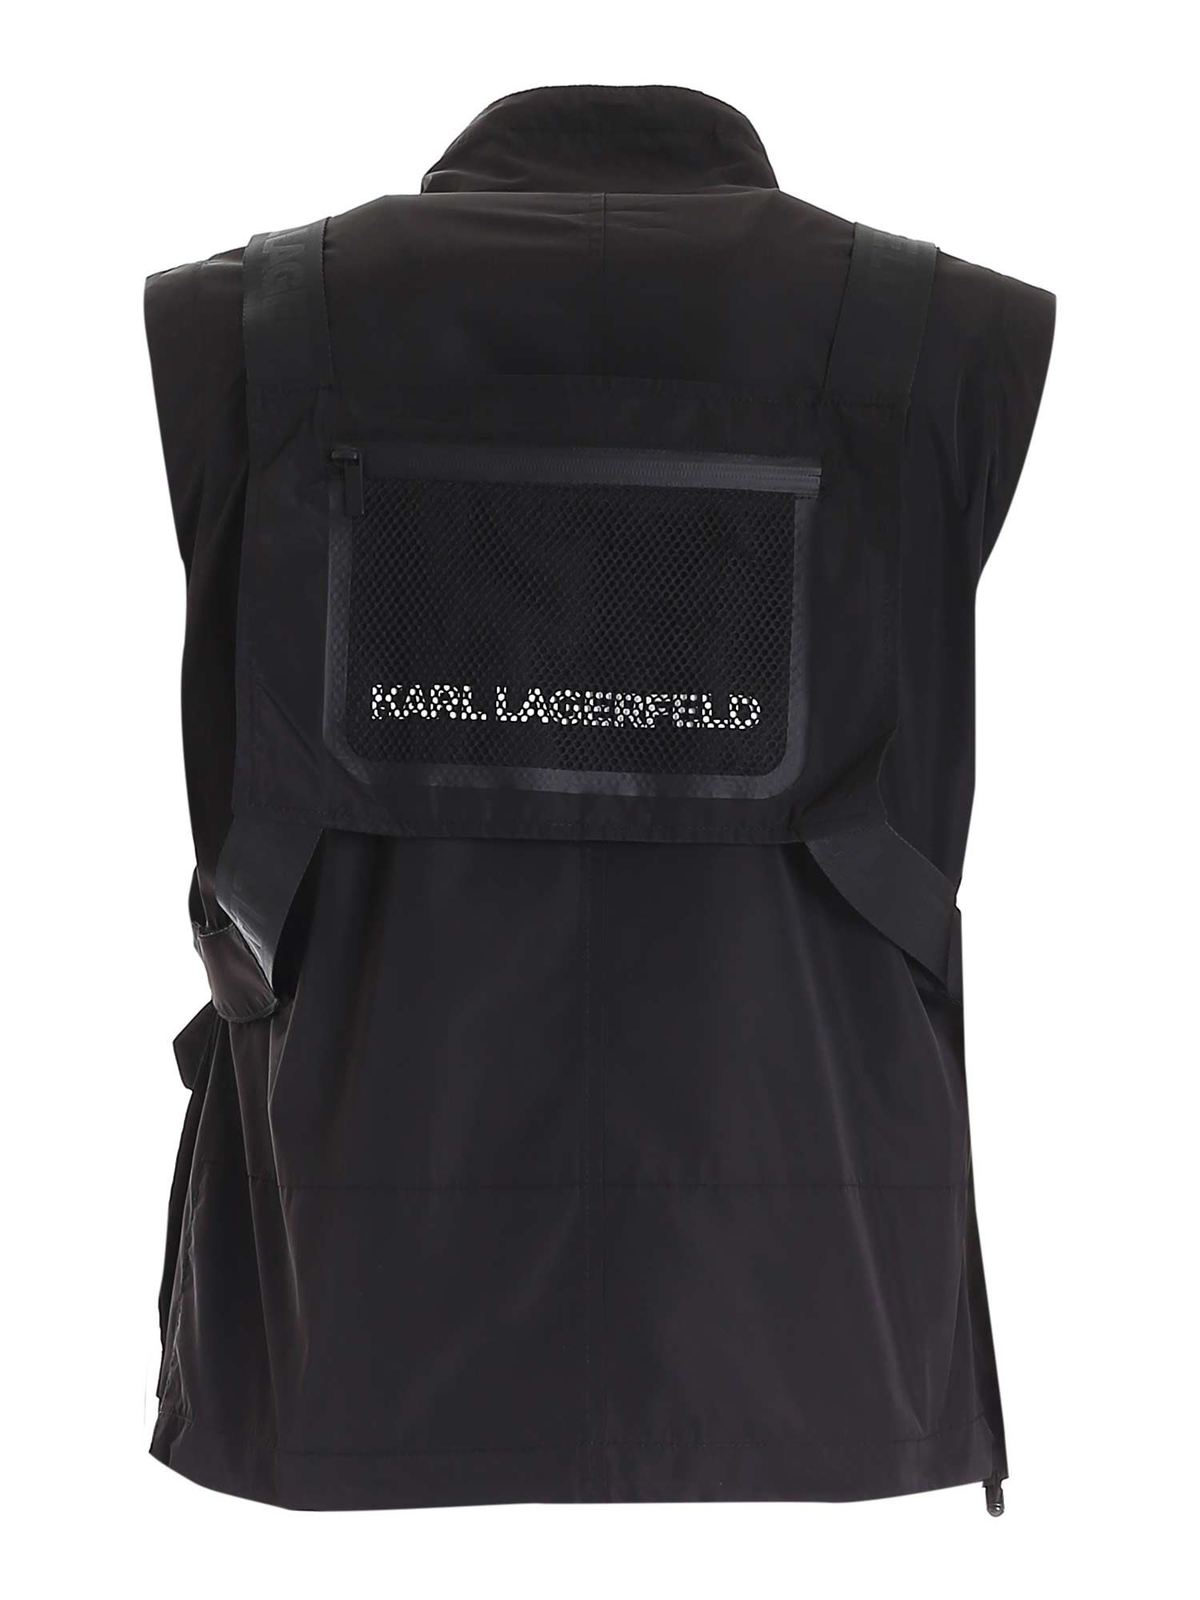 Gilets Karl Lagerfeld - Gilet - Noir - 505042511542990